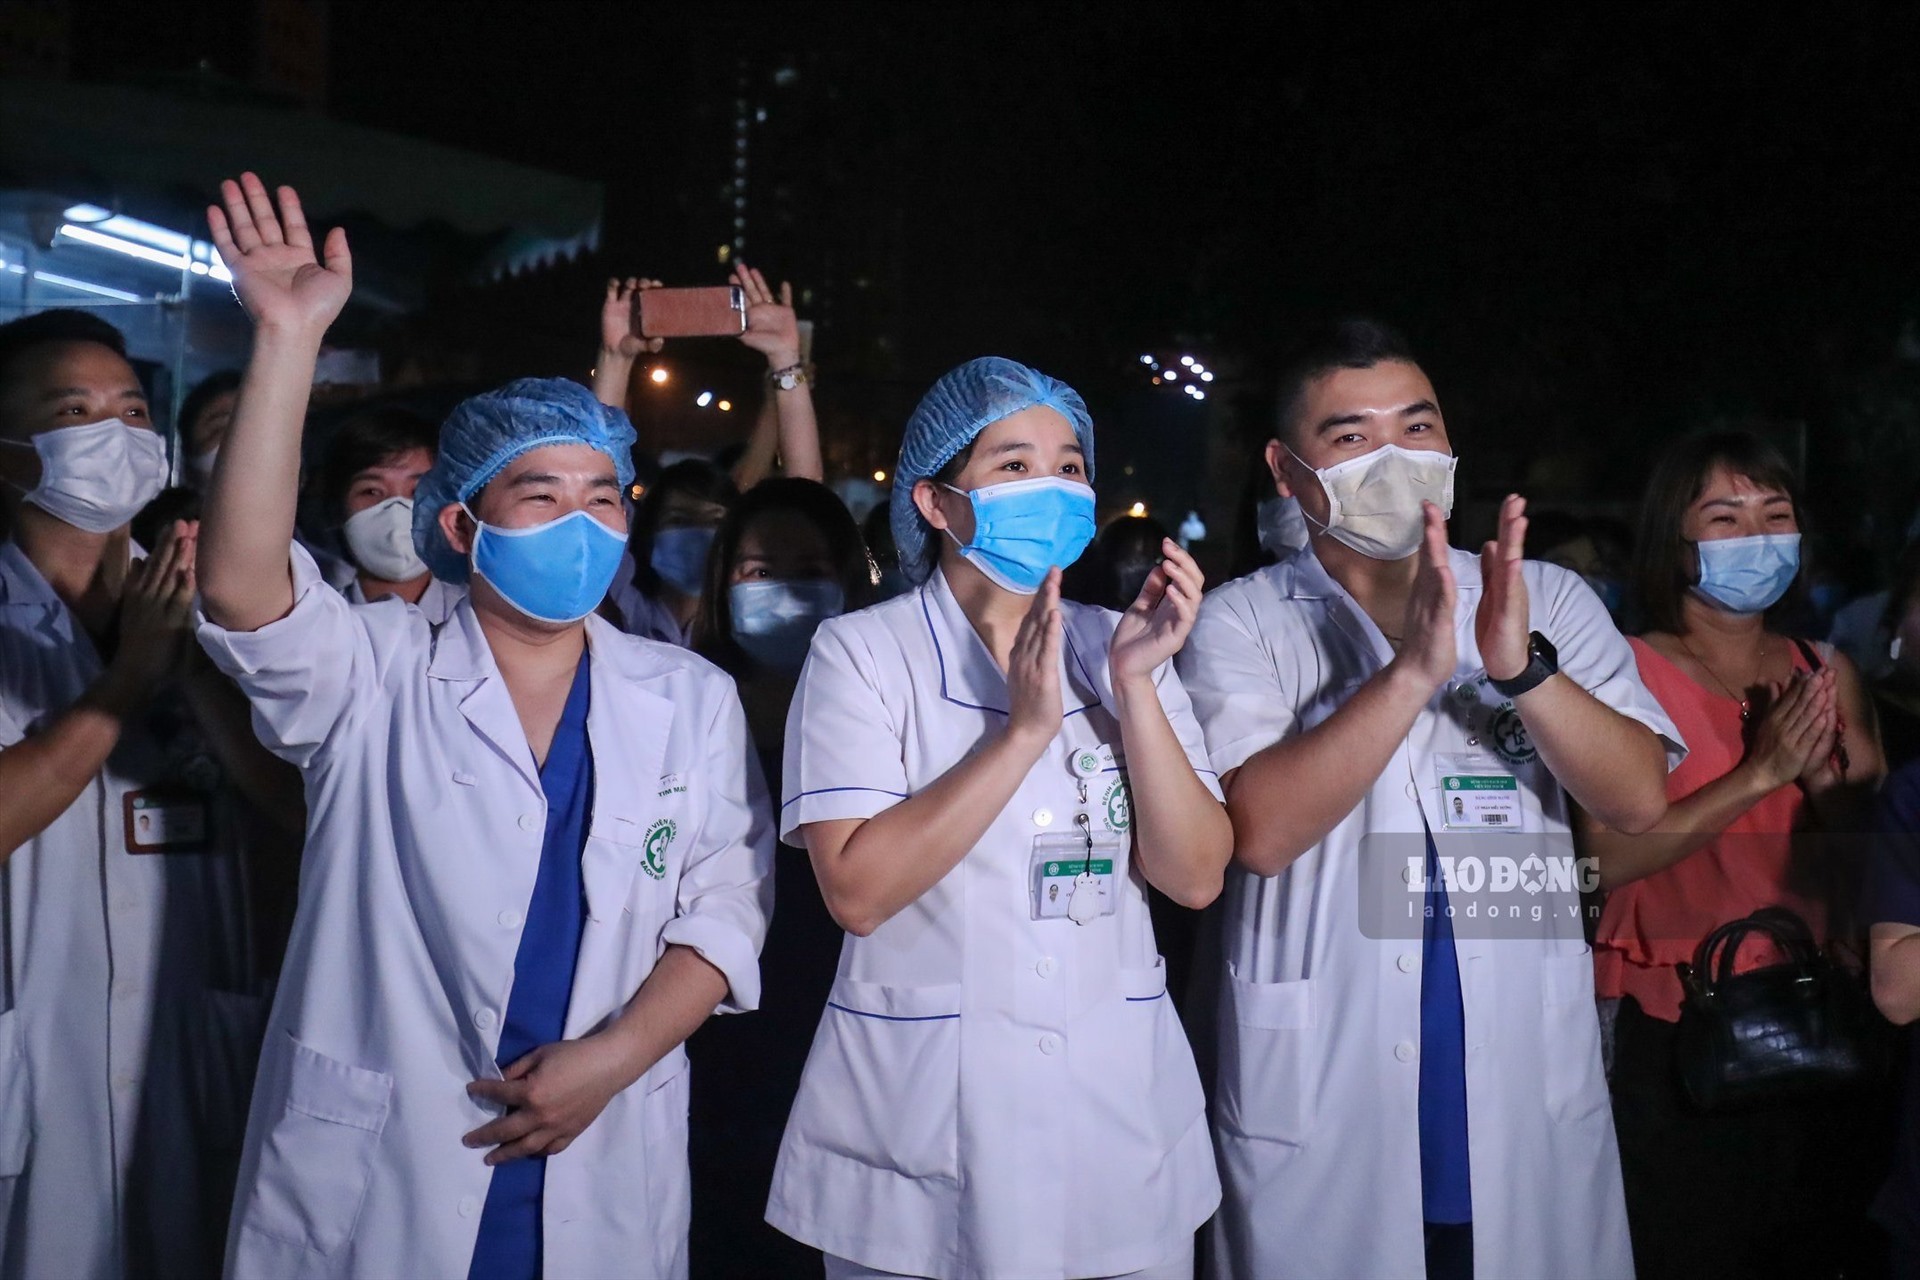 Các y bác sĩ của bệnh viện Bạch Mai đổ về khu vực cổng bệnh viện Bạch Mai, chứng kiến buổi lễ dỡ các chốt phong tỏa sau 14 ngày cách ly toàn diện bệnh viện. Ảnh: Sơn Tùng